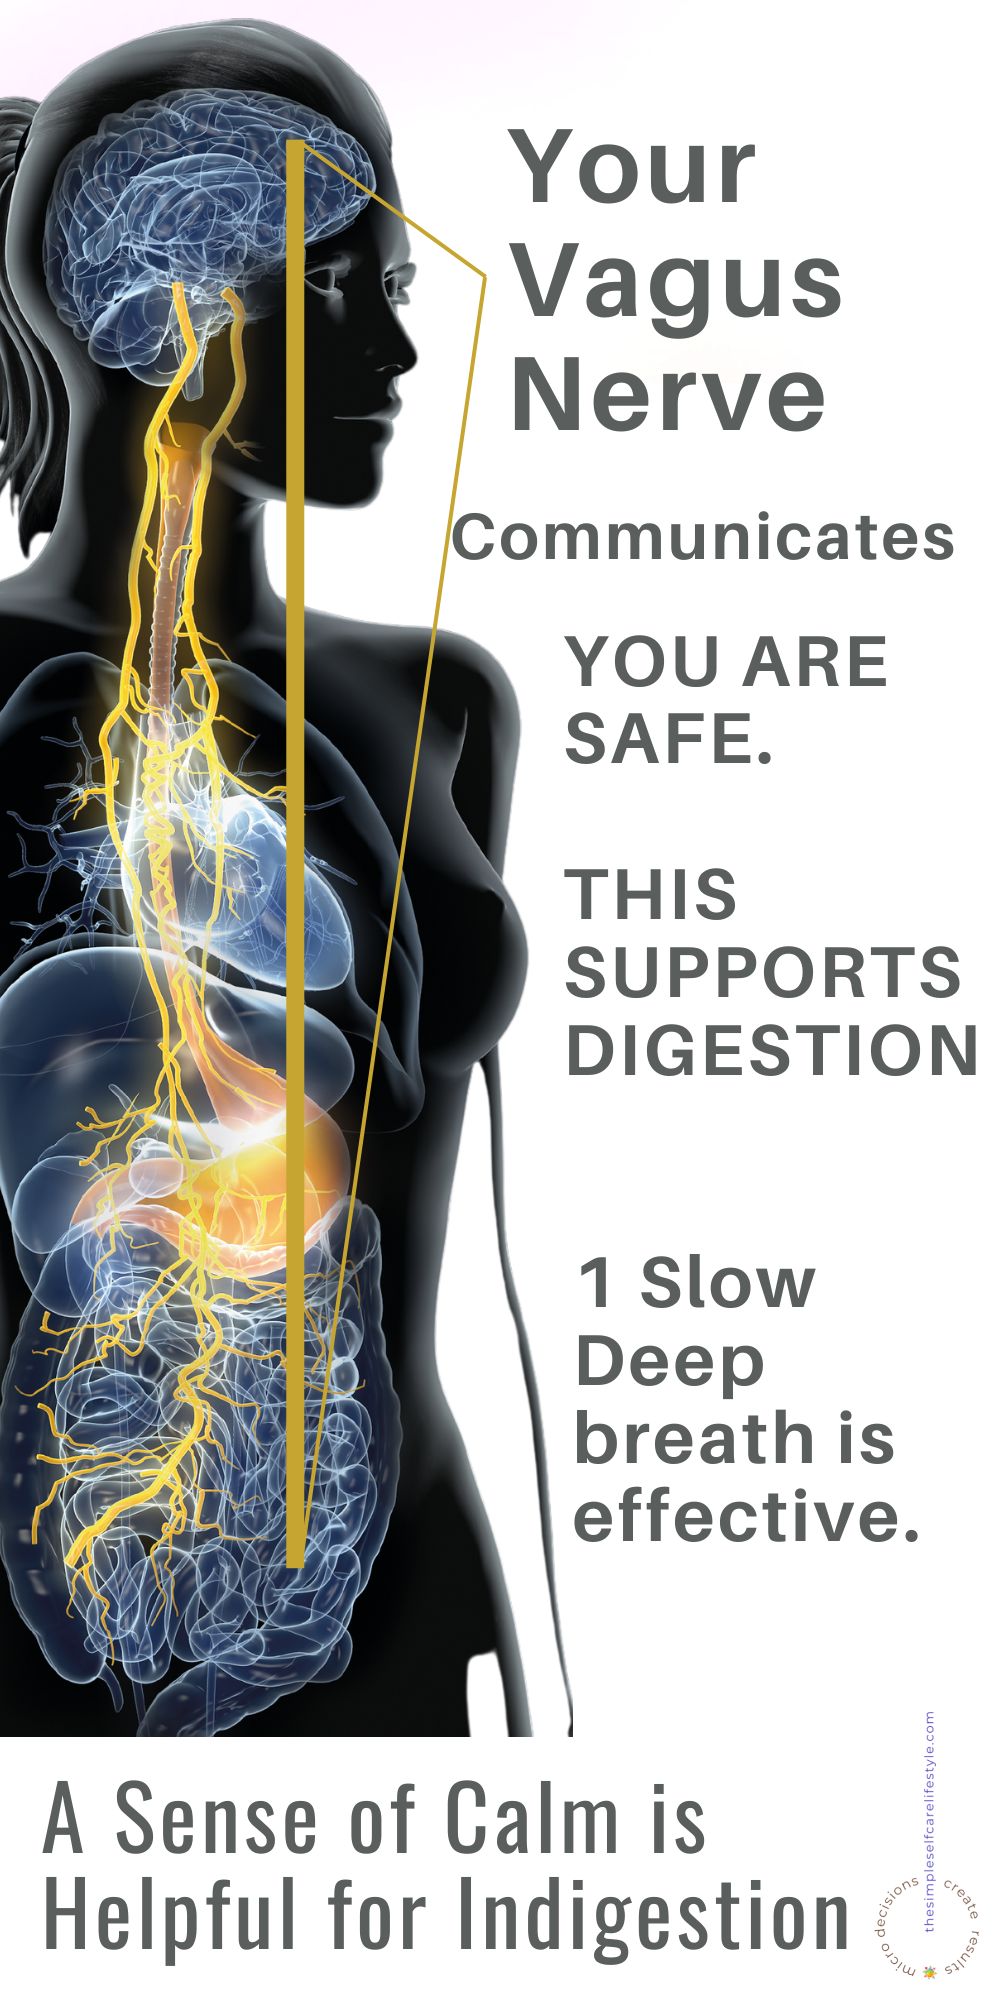 Illustration Vagus Nerve. Text. Slow Deep Breath Helps Vagus Nerve Communicate al is safe. Digestion is improved